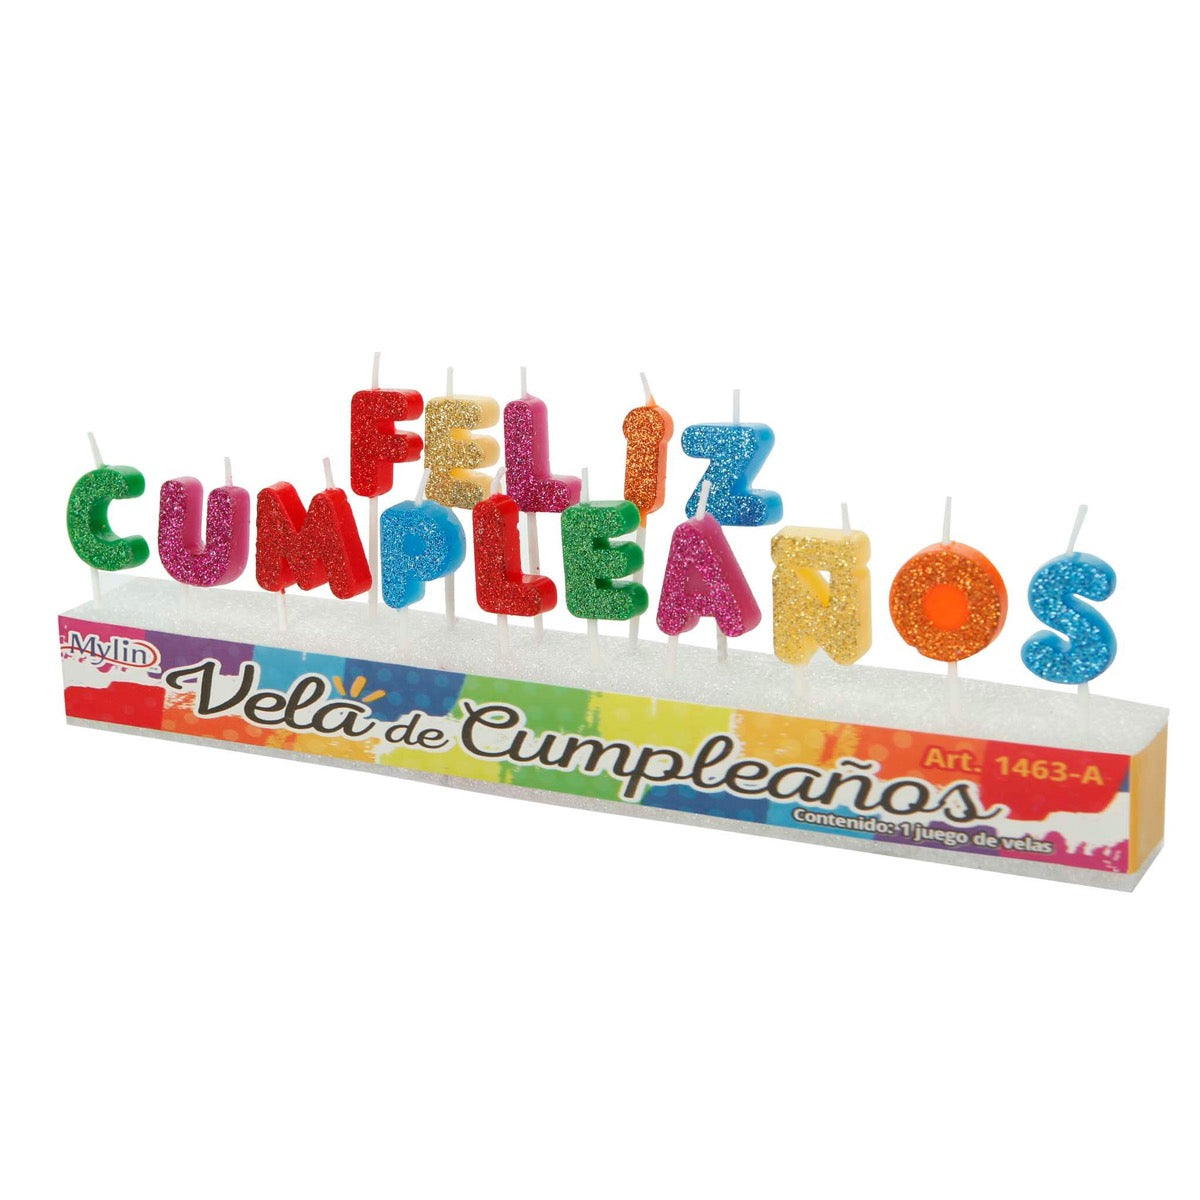 Velas Happy Birthday Y Feliz Cumpleaños (aprox 13pz) 7cm